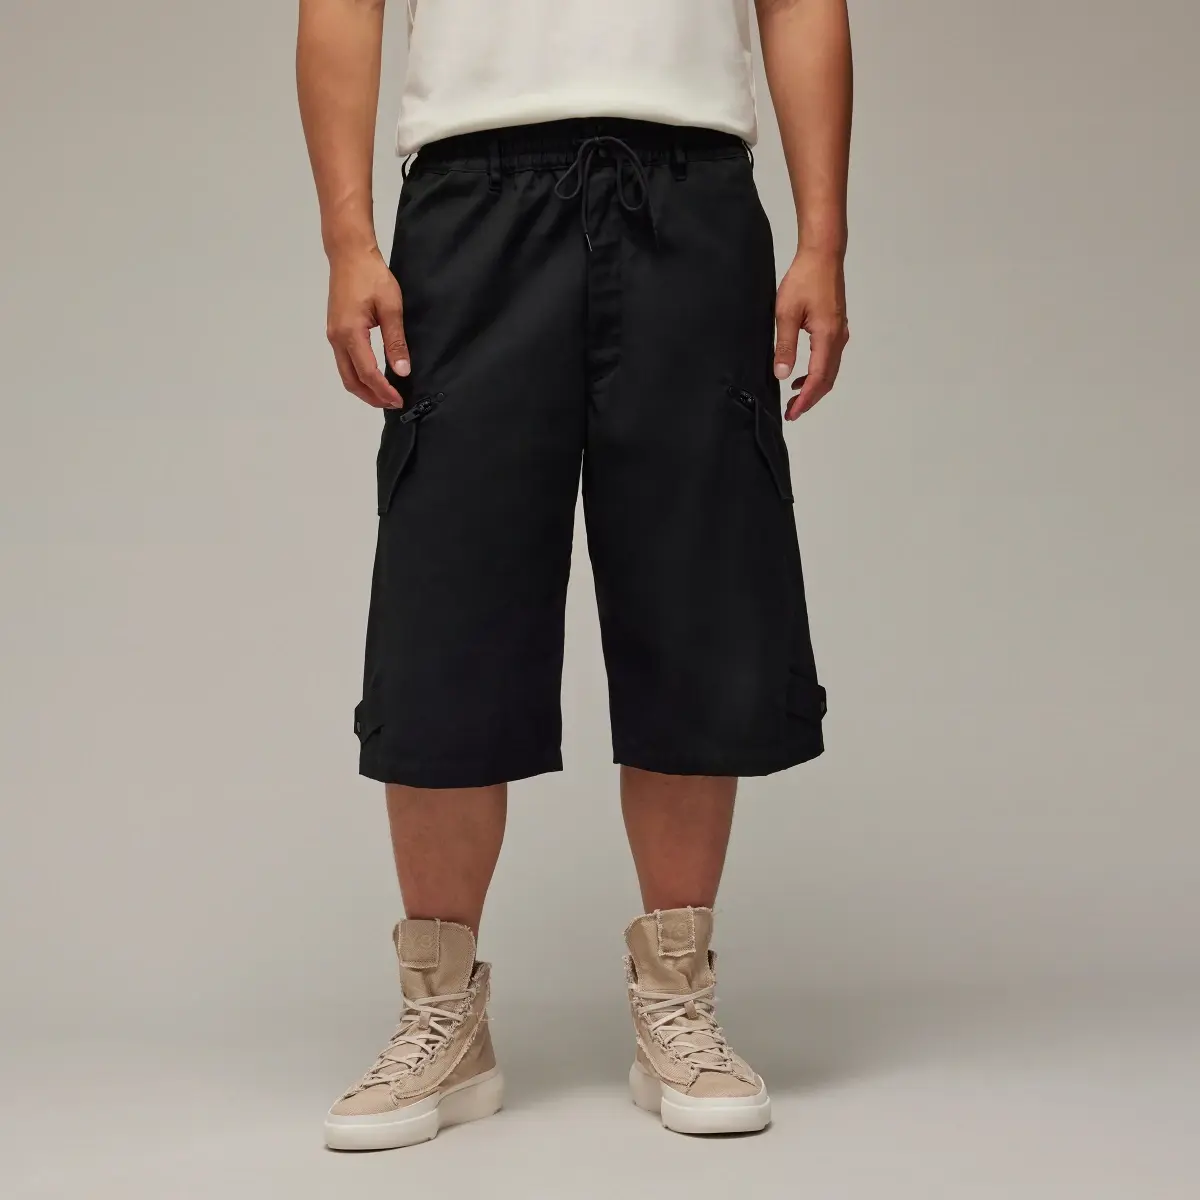 Adidas Y-3 Workwear Shorts. 1